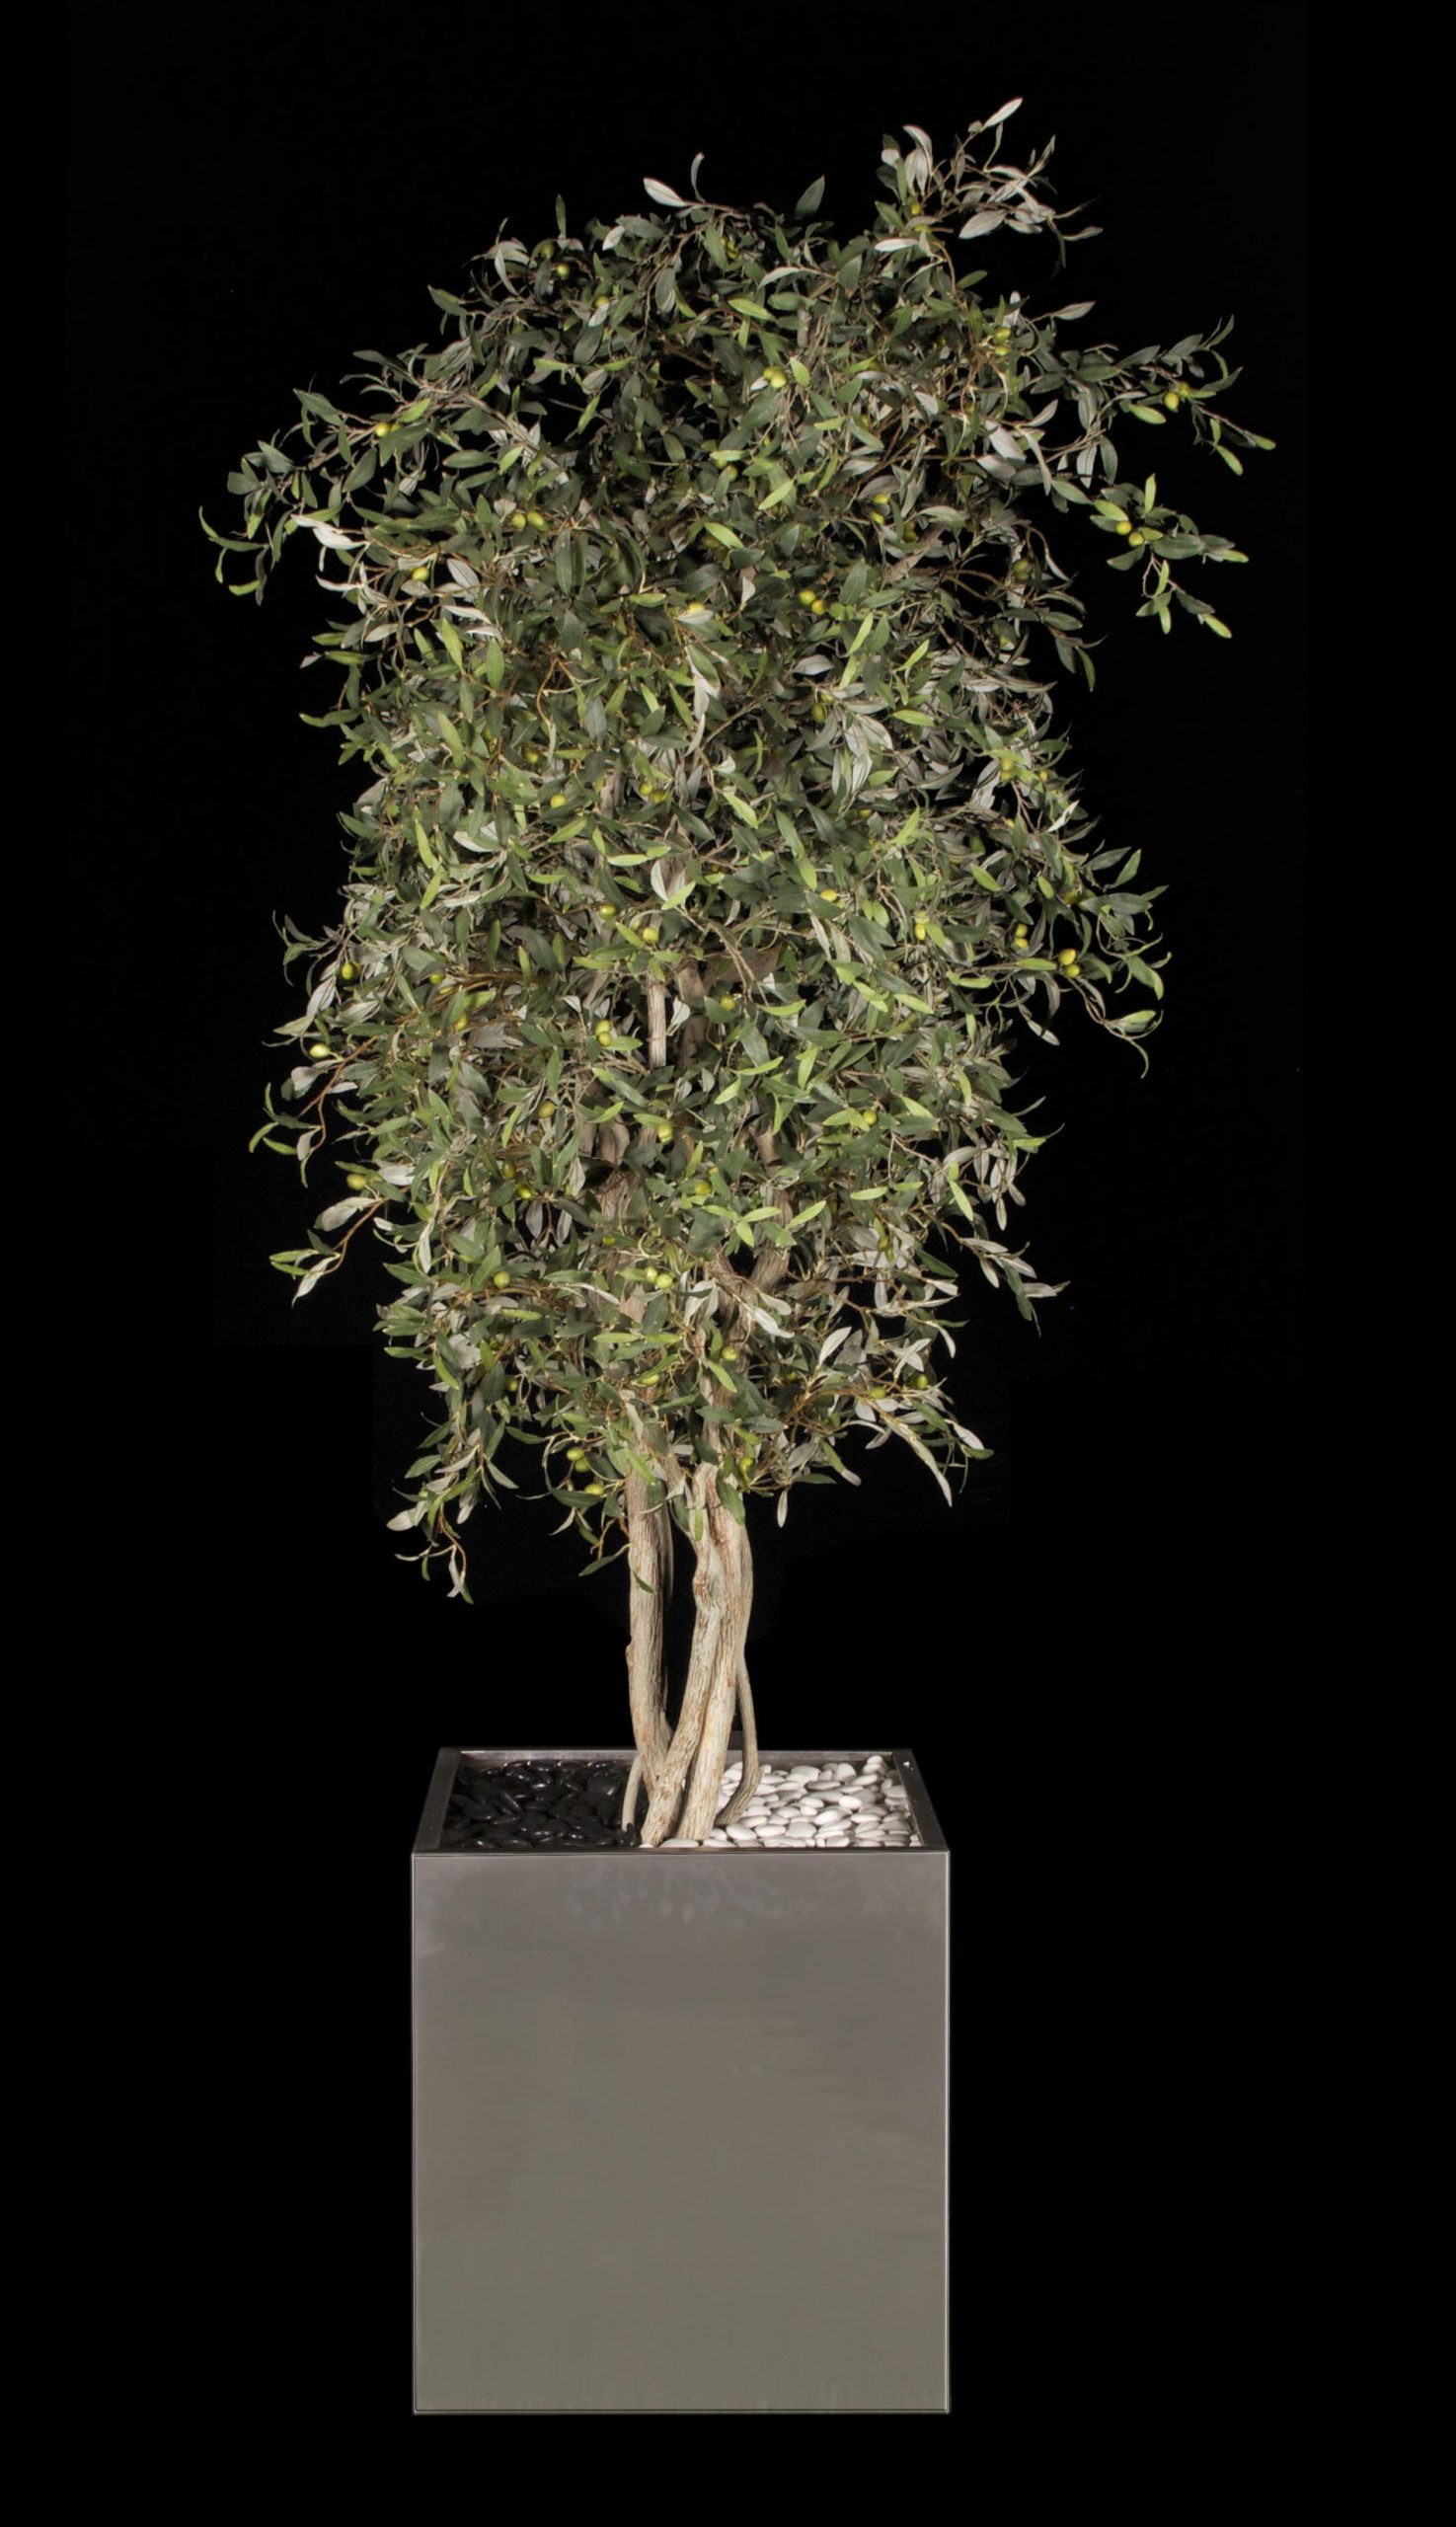 Flowers, Plants, & Mediterranean Olive Trees at Vanderpump